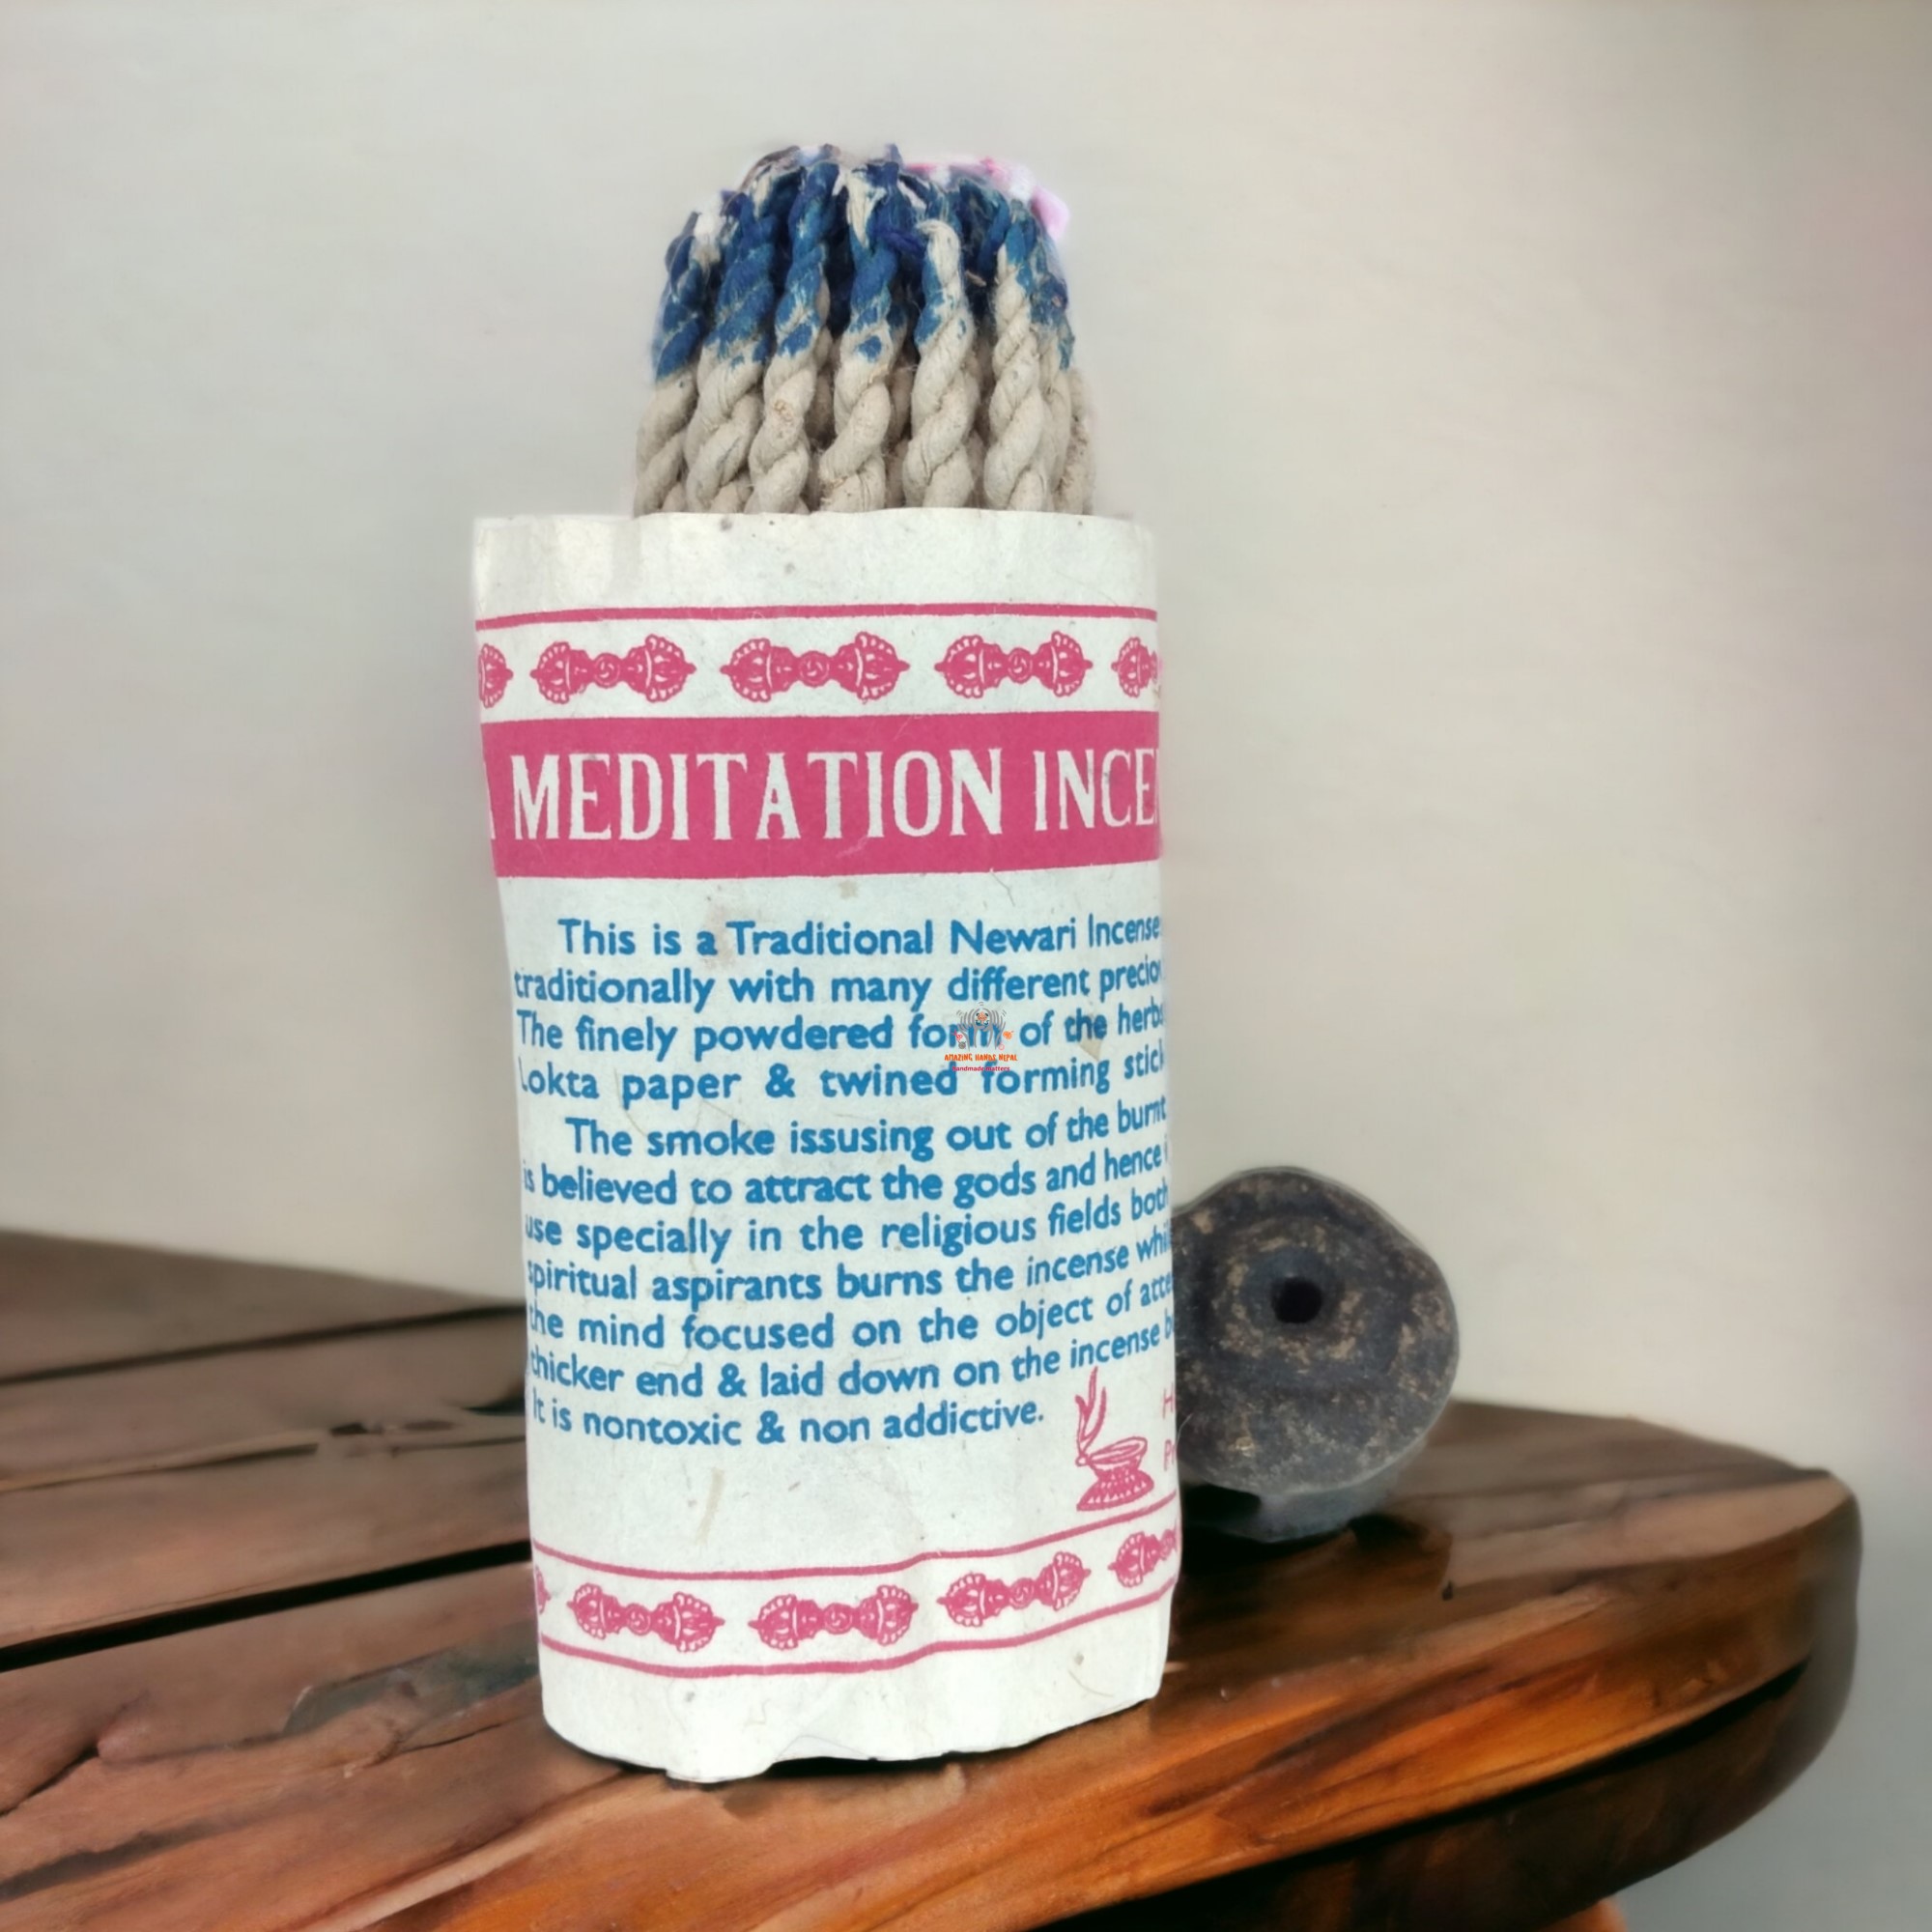 Vajra Meditation Rope Incense